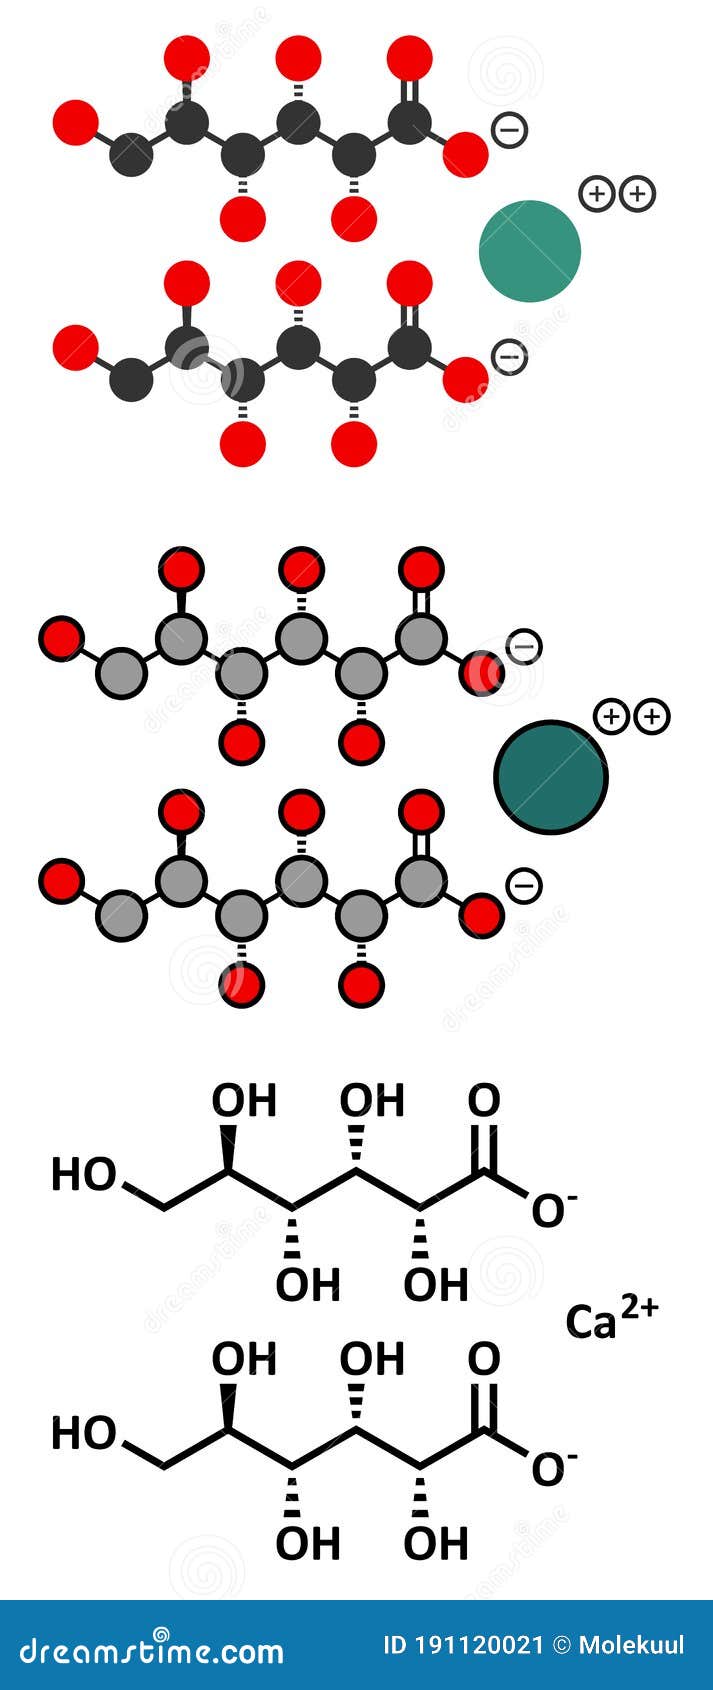 calcium gluconate drug soluble form ca used to treat magnesium overdose hypocalcemia hydrofluoric acid hf burns calcium 191120021